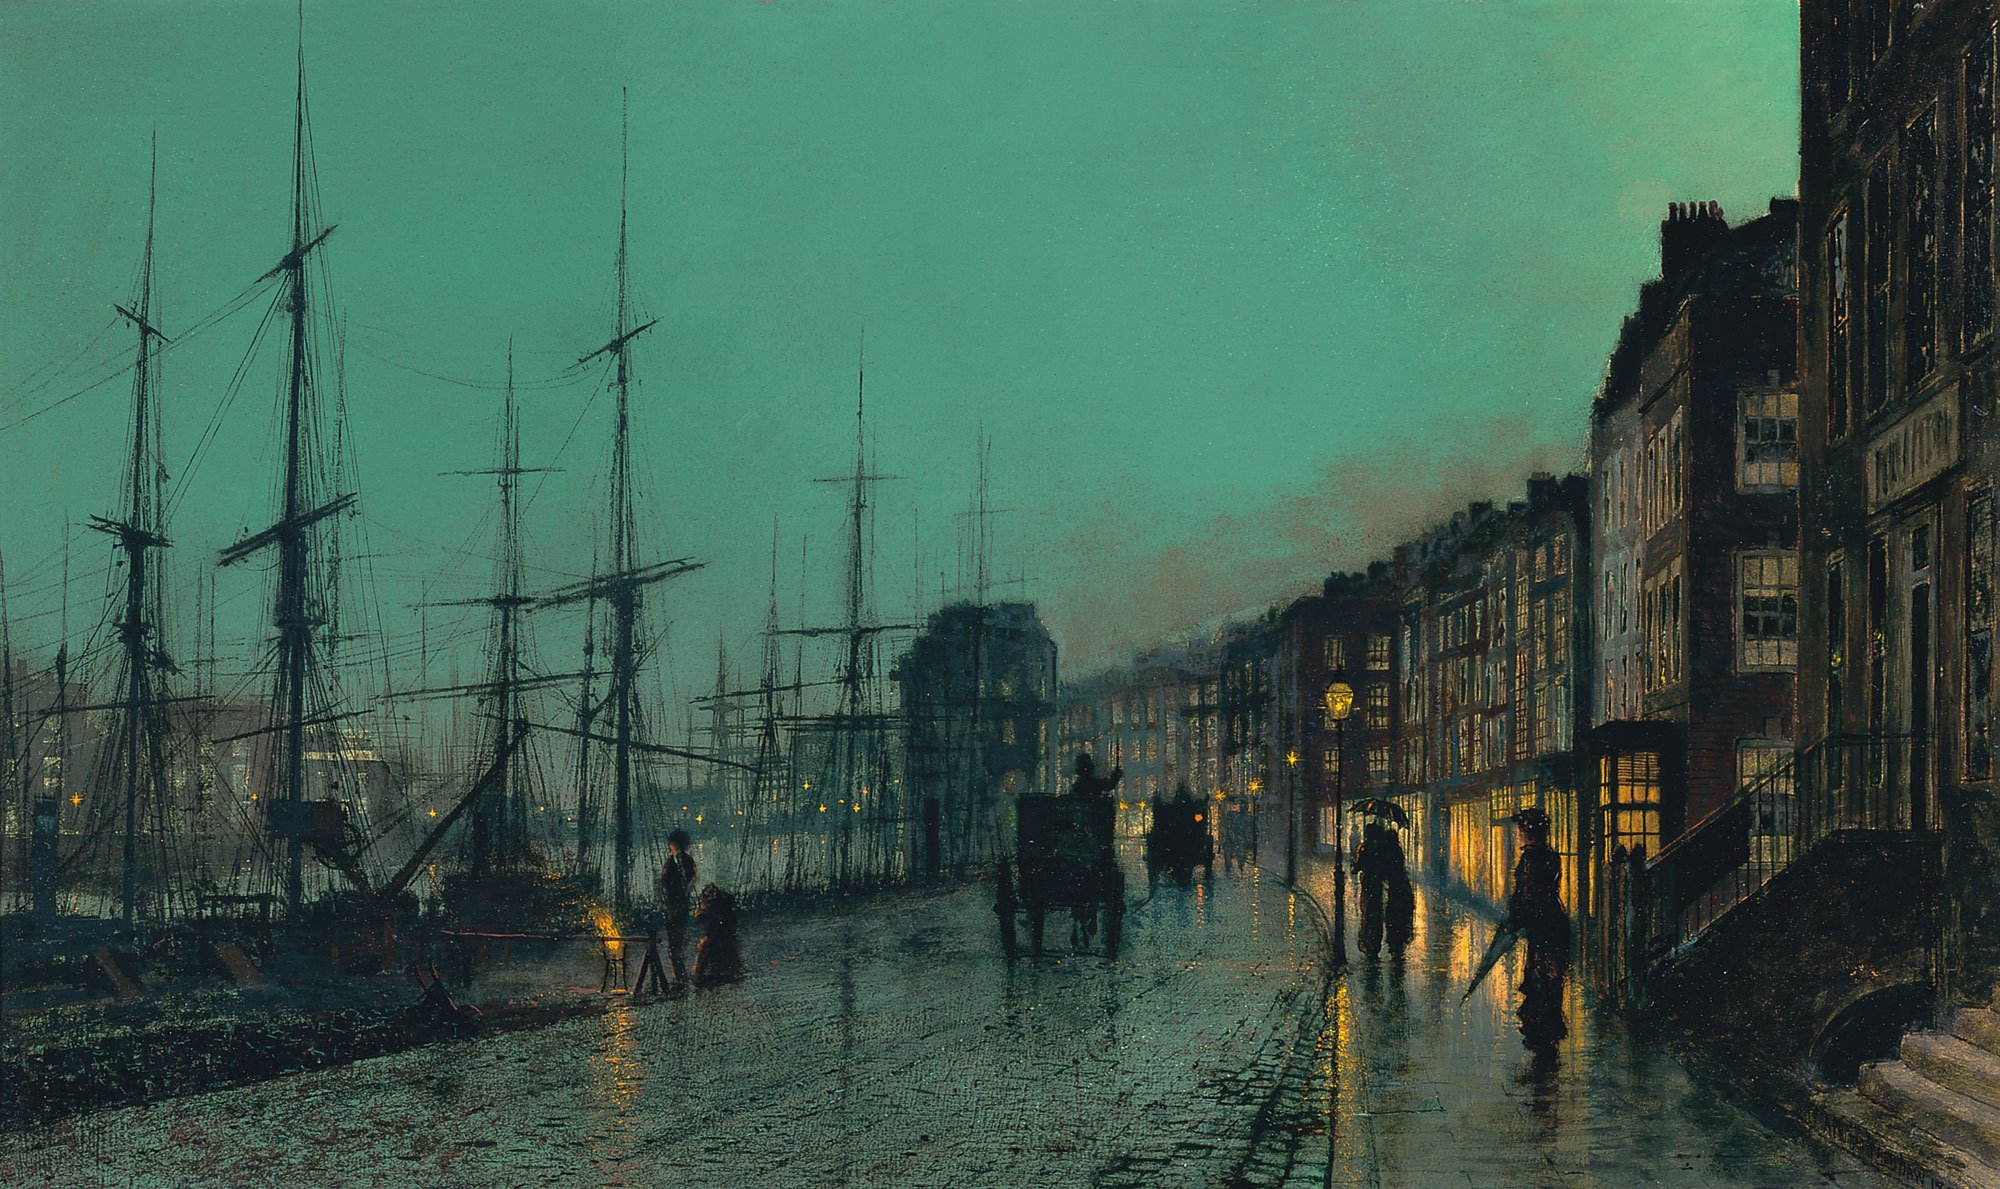 картина джон эткинсон гримшоу ночь улица город порт пристань корабли мачты мостовая карета дома